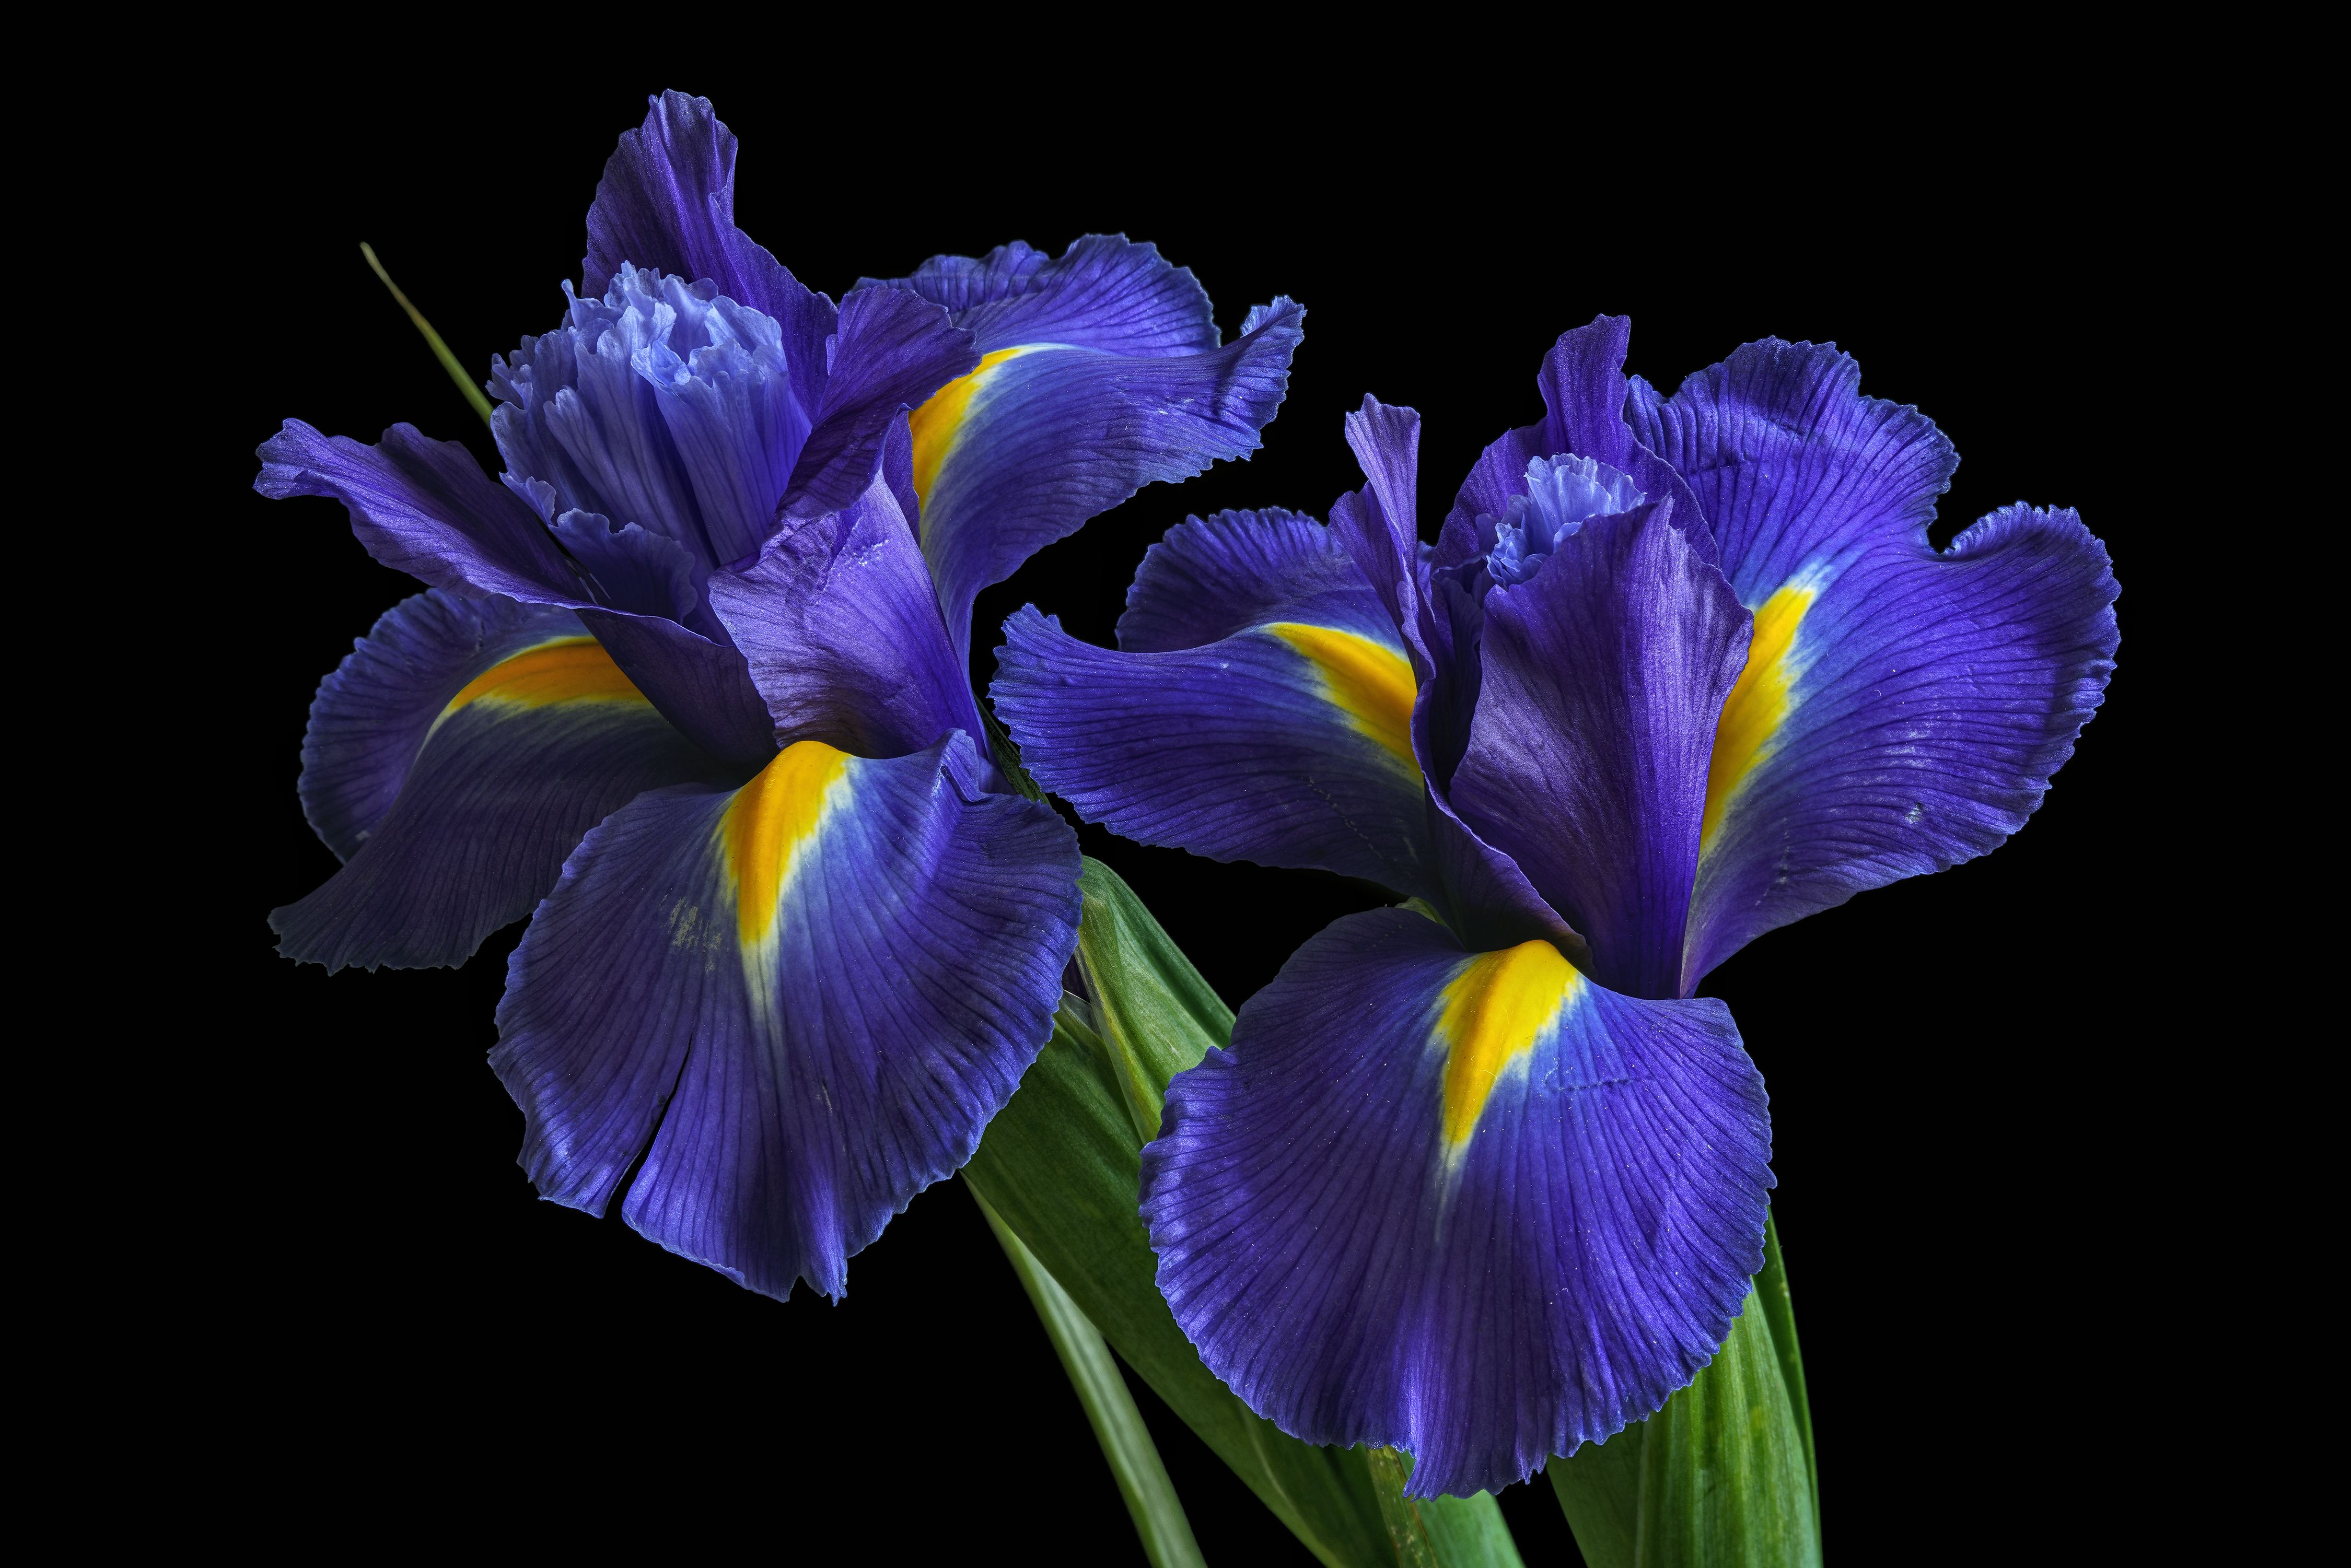 Обои Irises цветы ирисы - бесплатные картинки на Fonwall